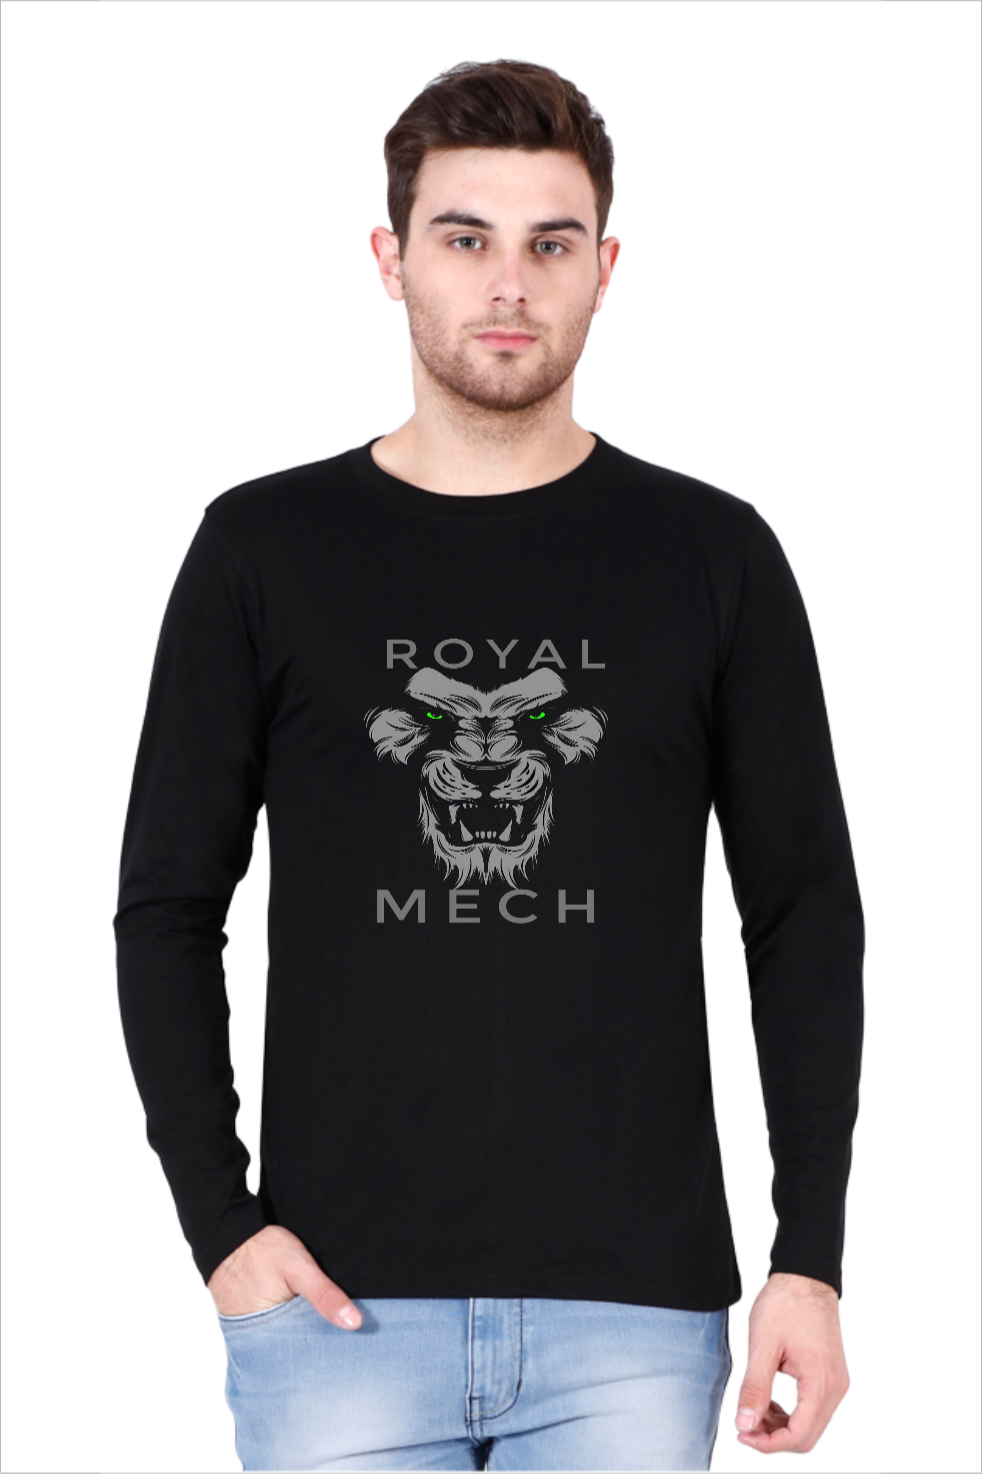 royal mech t shirts